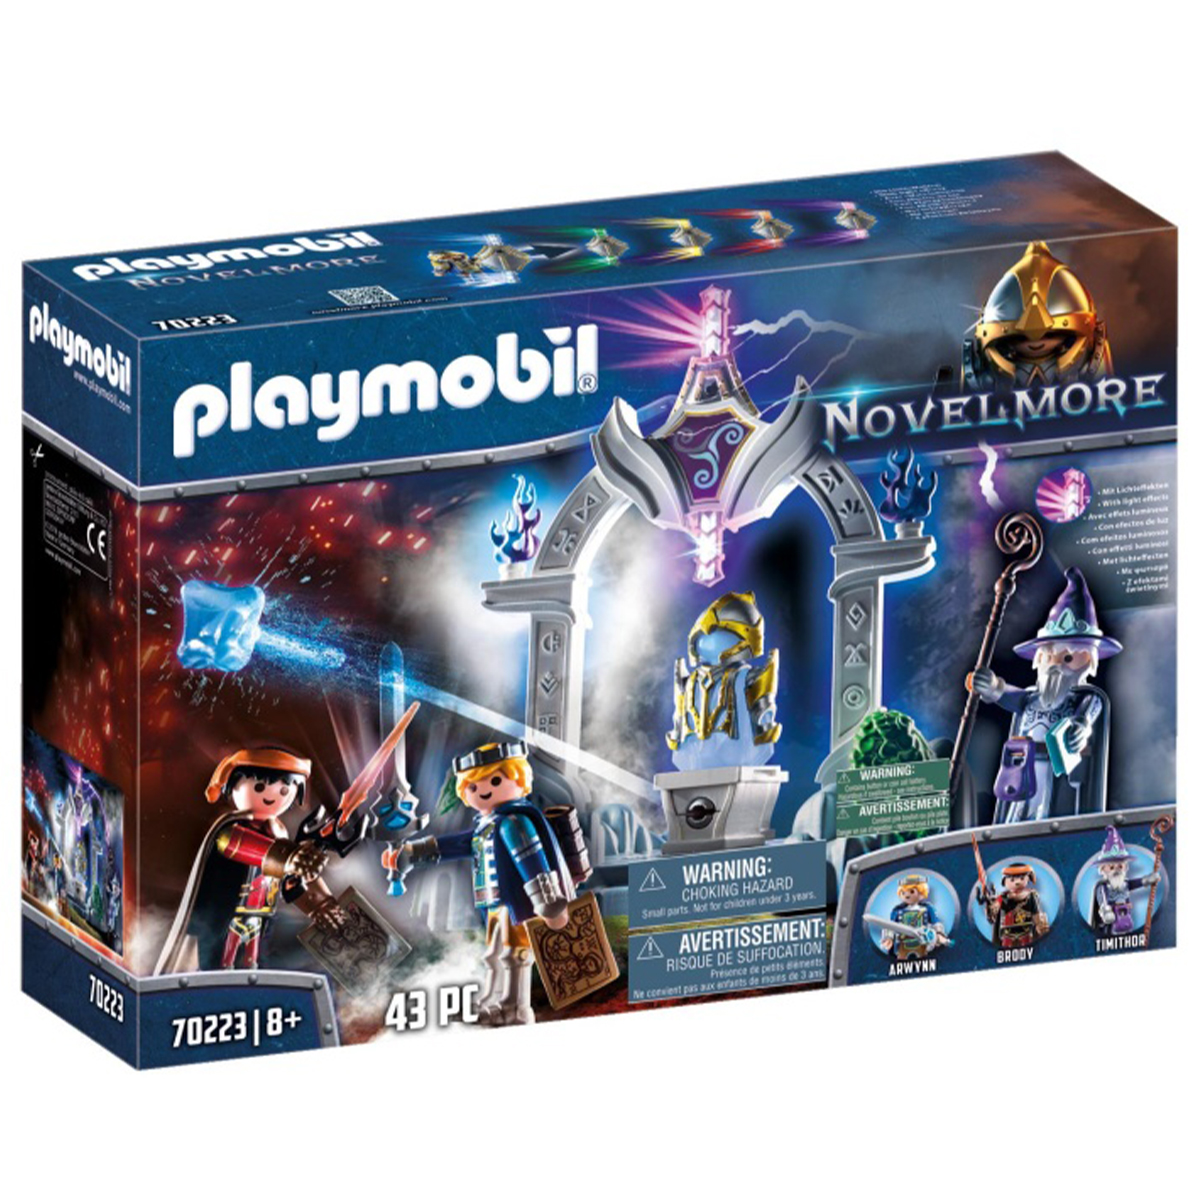 Playmobil Novelmore, Templul timpului 70223